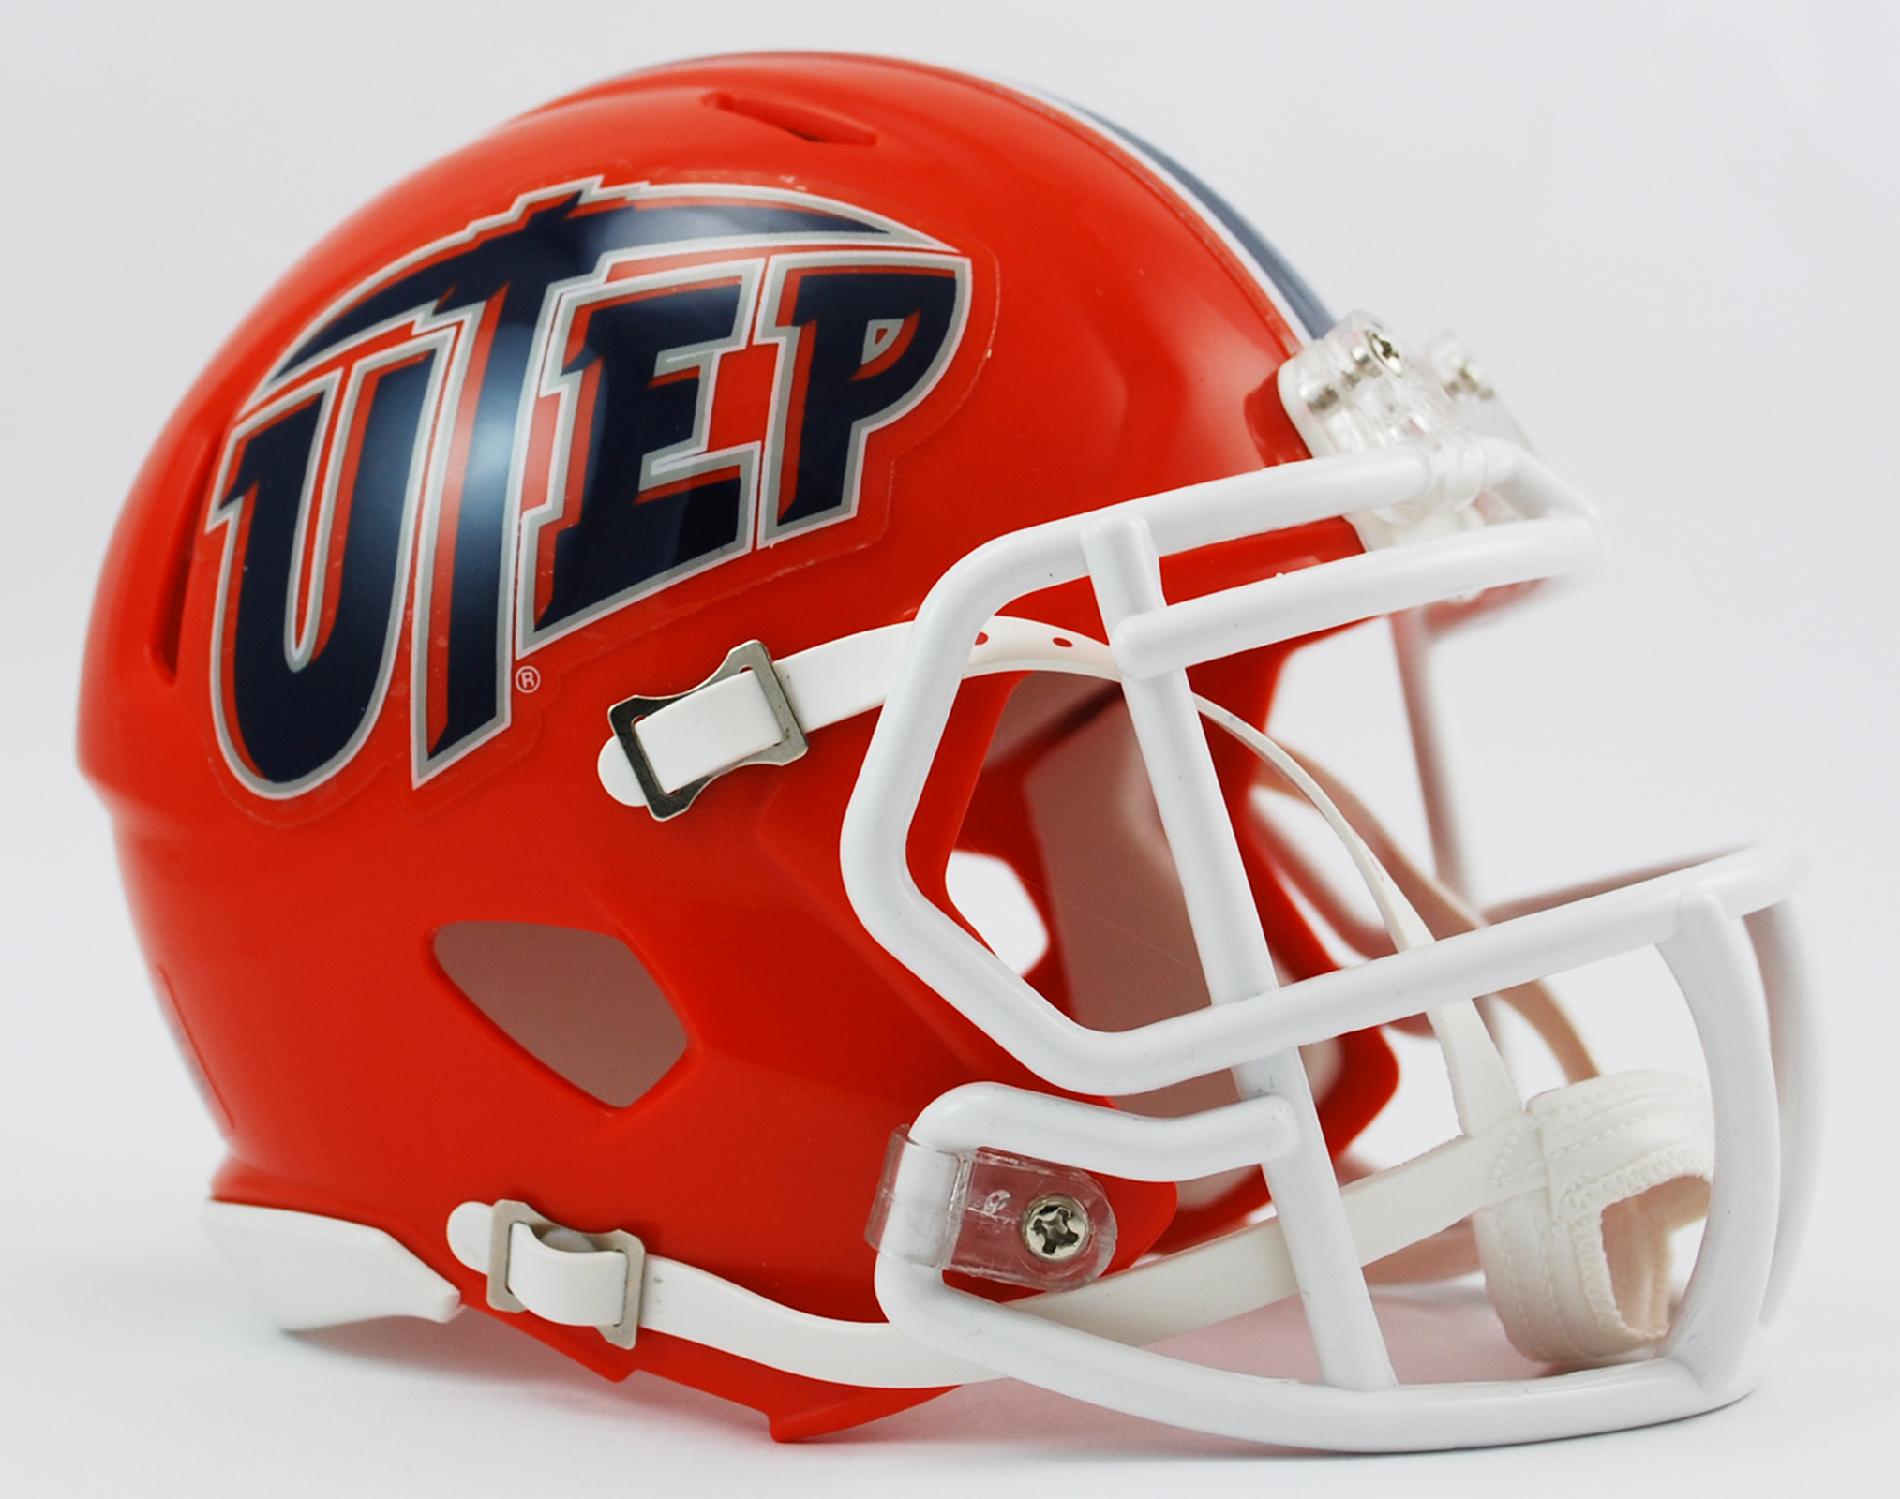 Riddell Texas El Paso (UTEP) Speed Mini Helmet